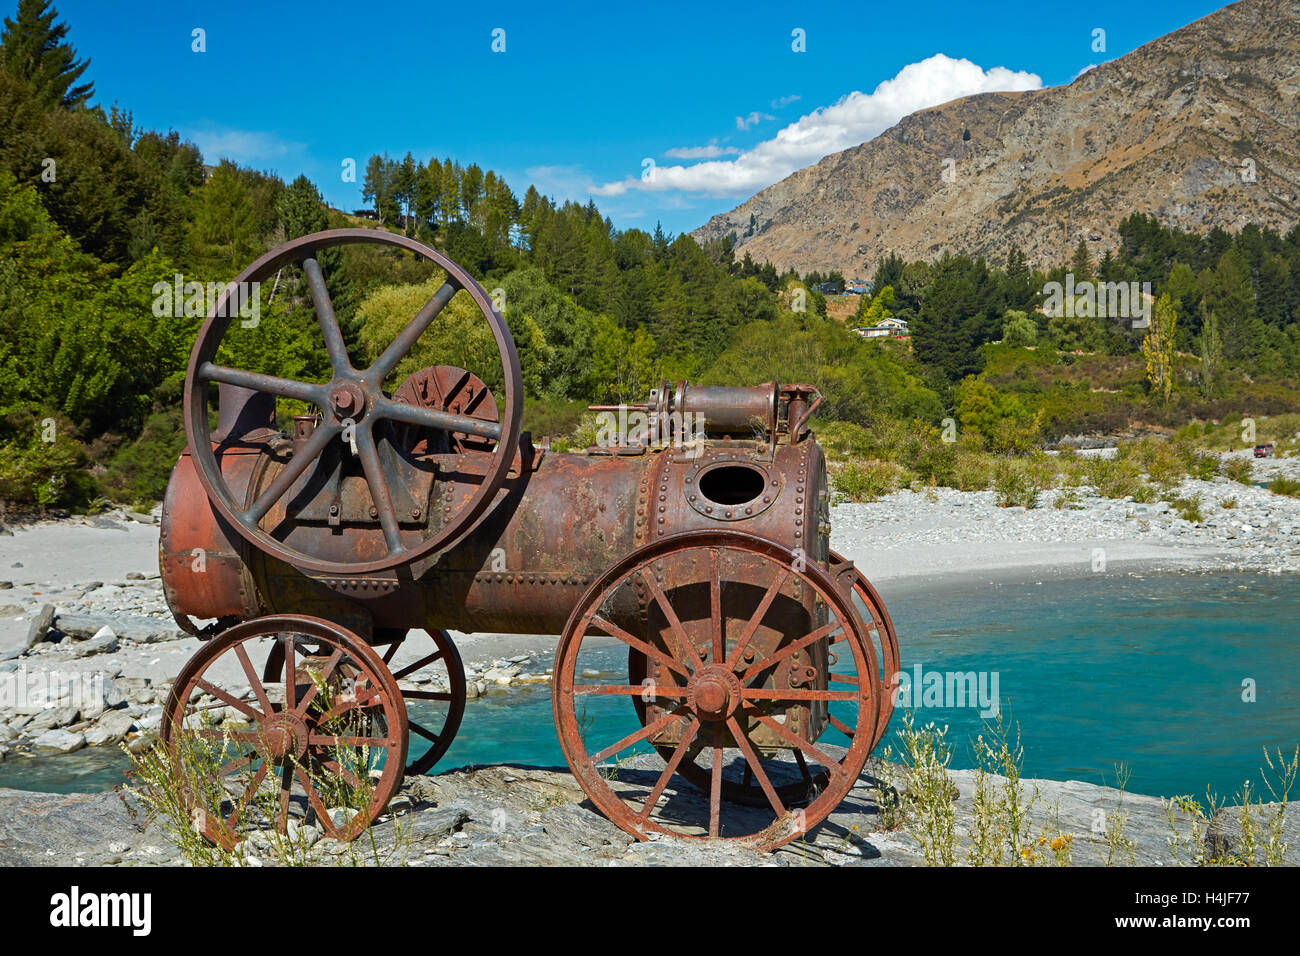 Relique historique à partir de la ruée vers l'or, la rivière Shotover, Queenstown, Otago, île du Sud, Nouvelle-Zélande Banque D'Images